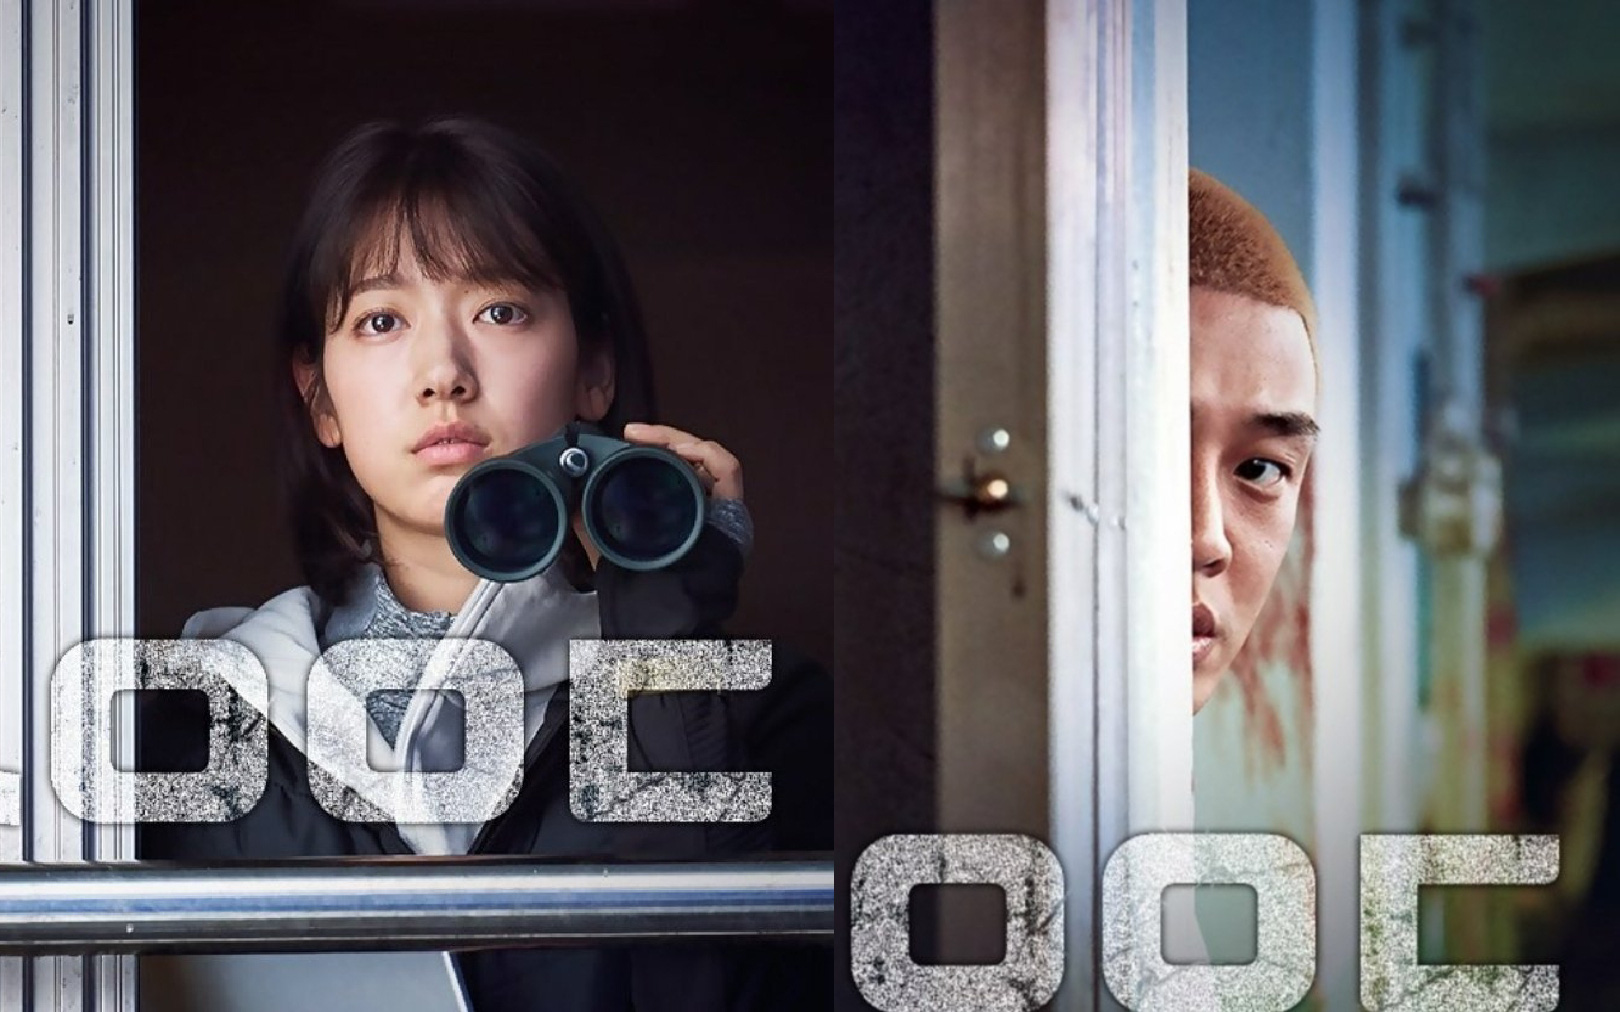 Phim của Yoo Ah In và Park Shin Hye tung hình ảnh đầu tiên, tạo hình khác lạ nhưng thần thái vẫn siêu hút mắt